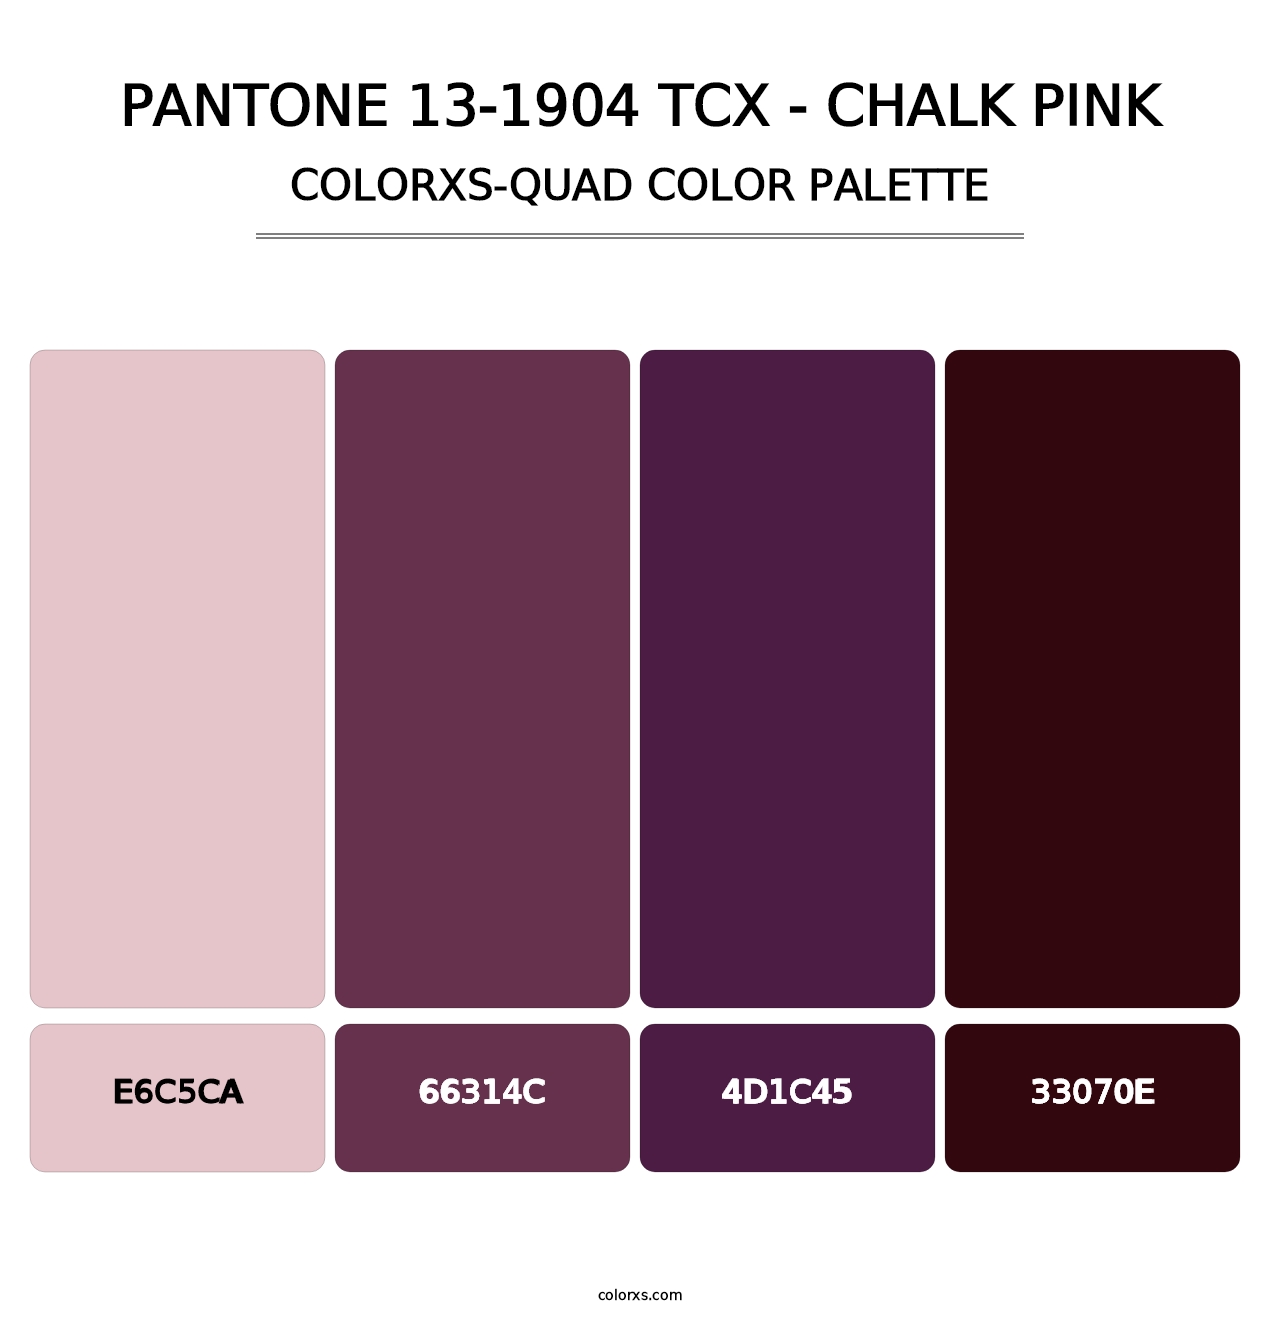 PANTONE 13-1904 TCX - Chalk Pink - Colorxs Quad Palette